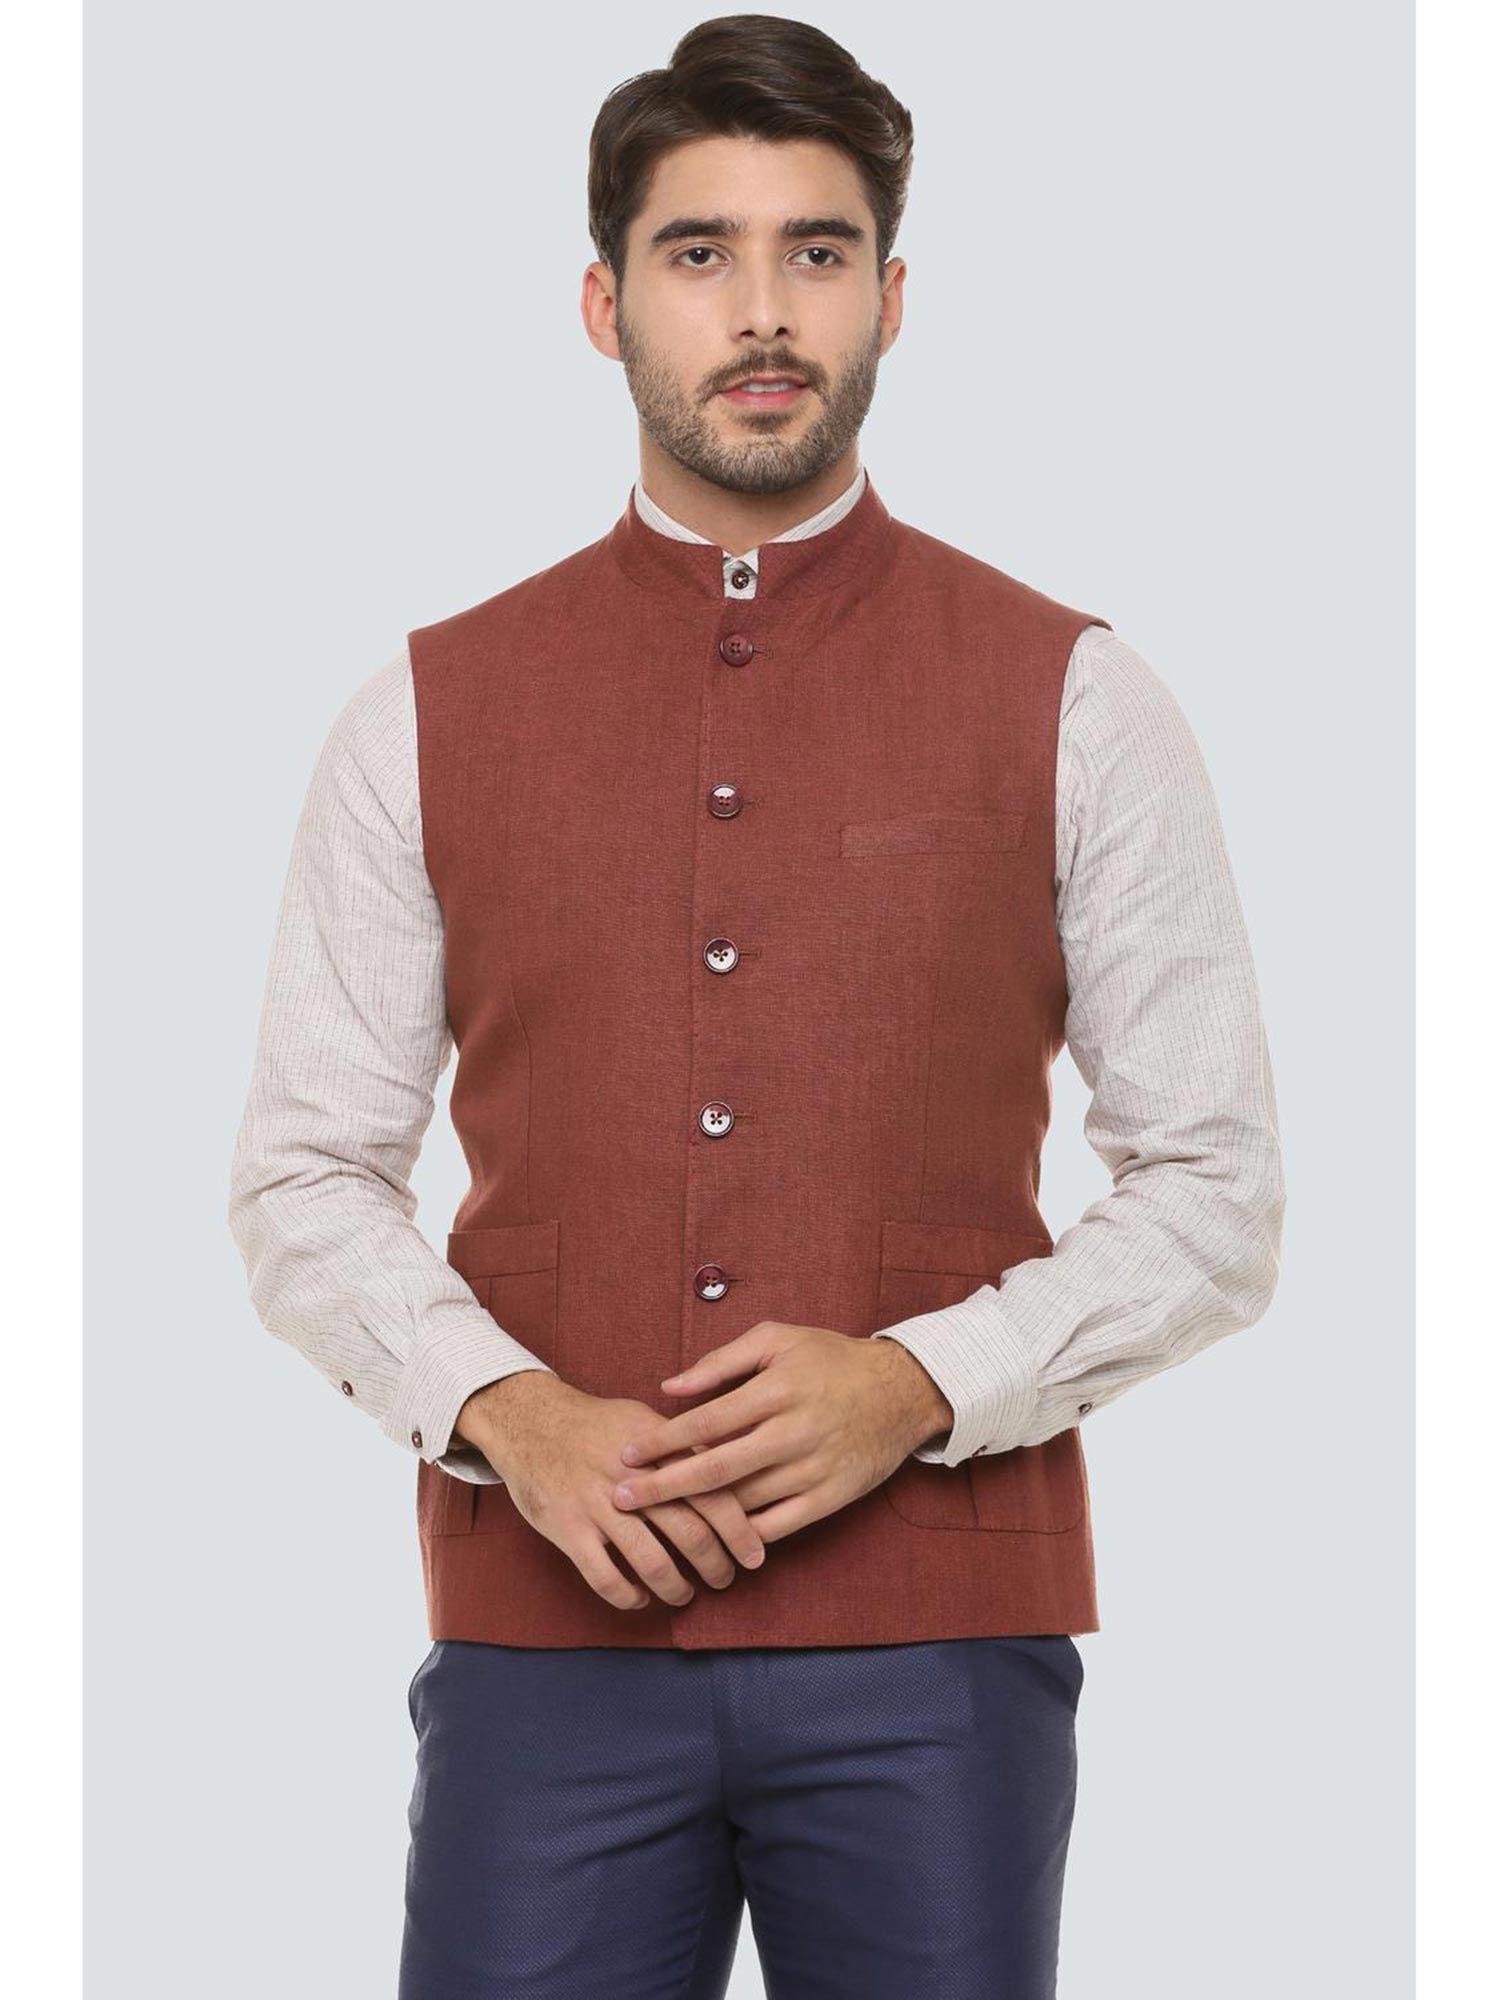 maroon-nehru-jacket